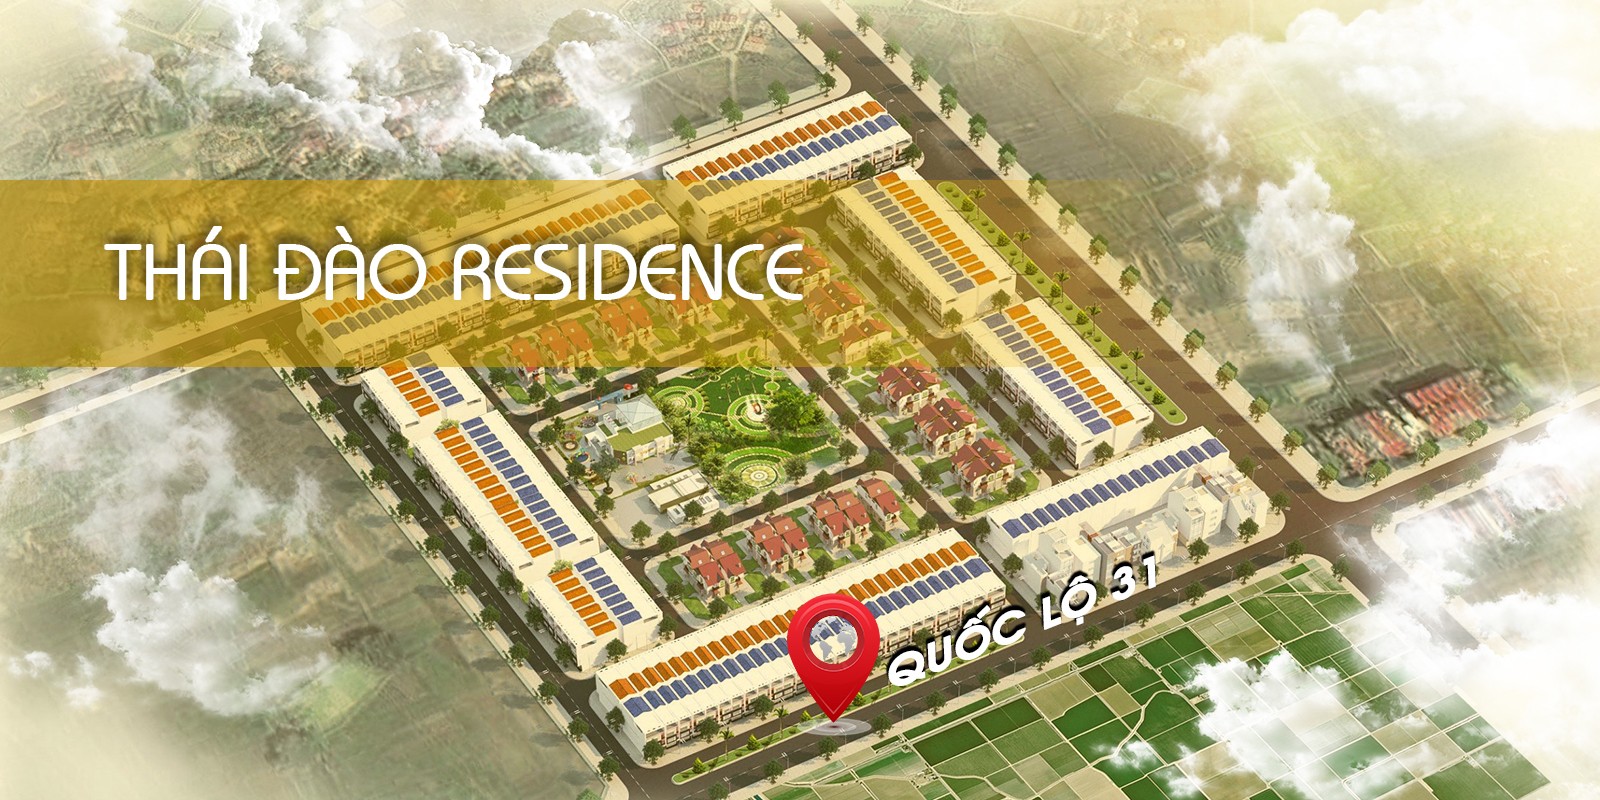 Bán Xuất ngoại giao Đất nền GIÁ RẺ dự án Thái Đào Residence Thôn Mầu – Mặt đường Ql 31 1